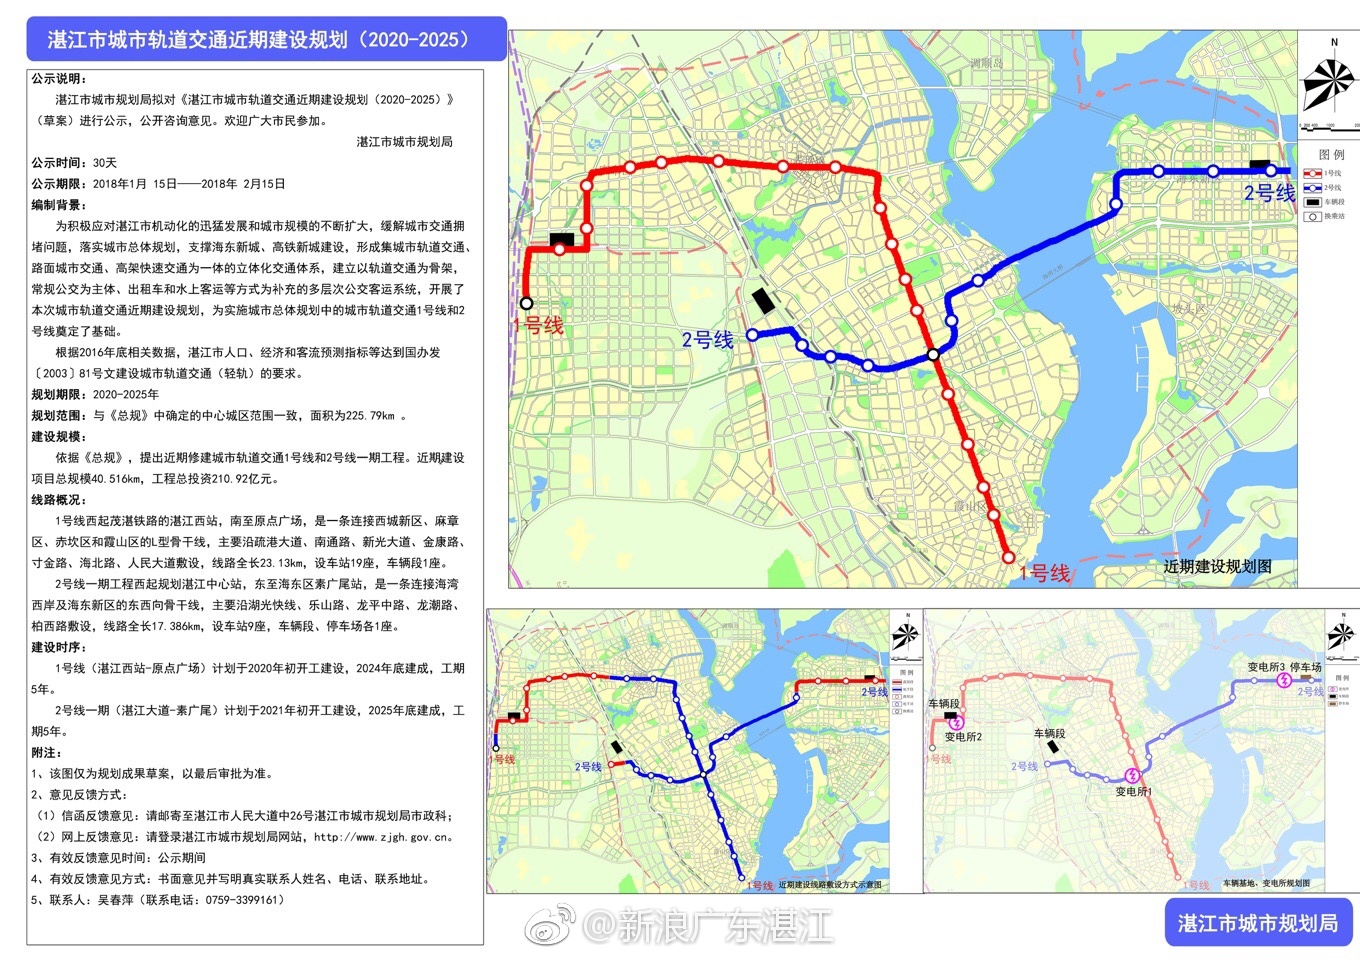 湛江市轨道交通规划图公布地铁1,2号线规划走向